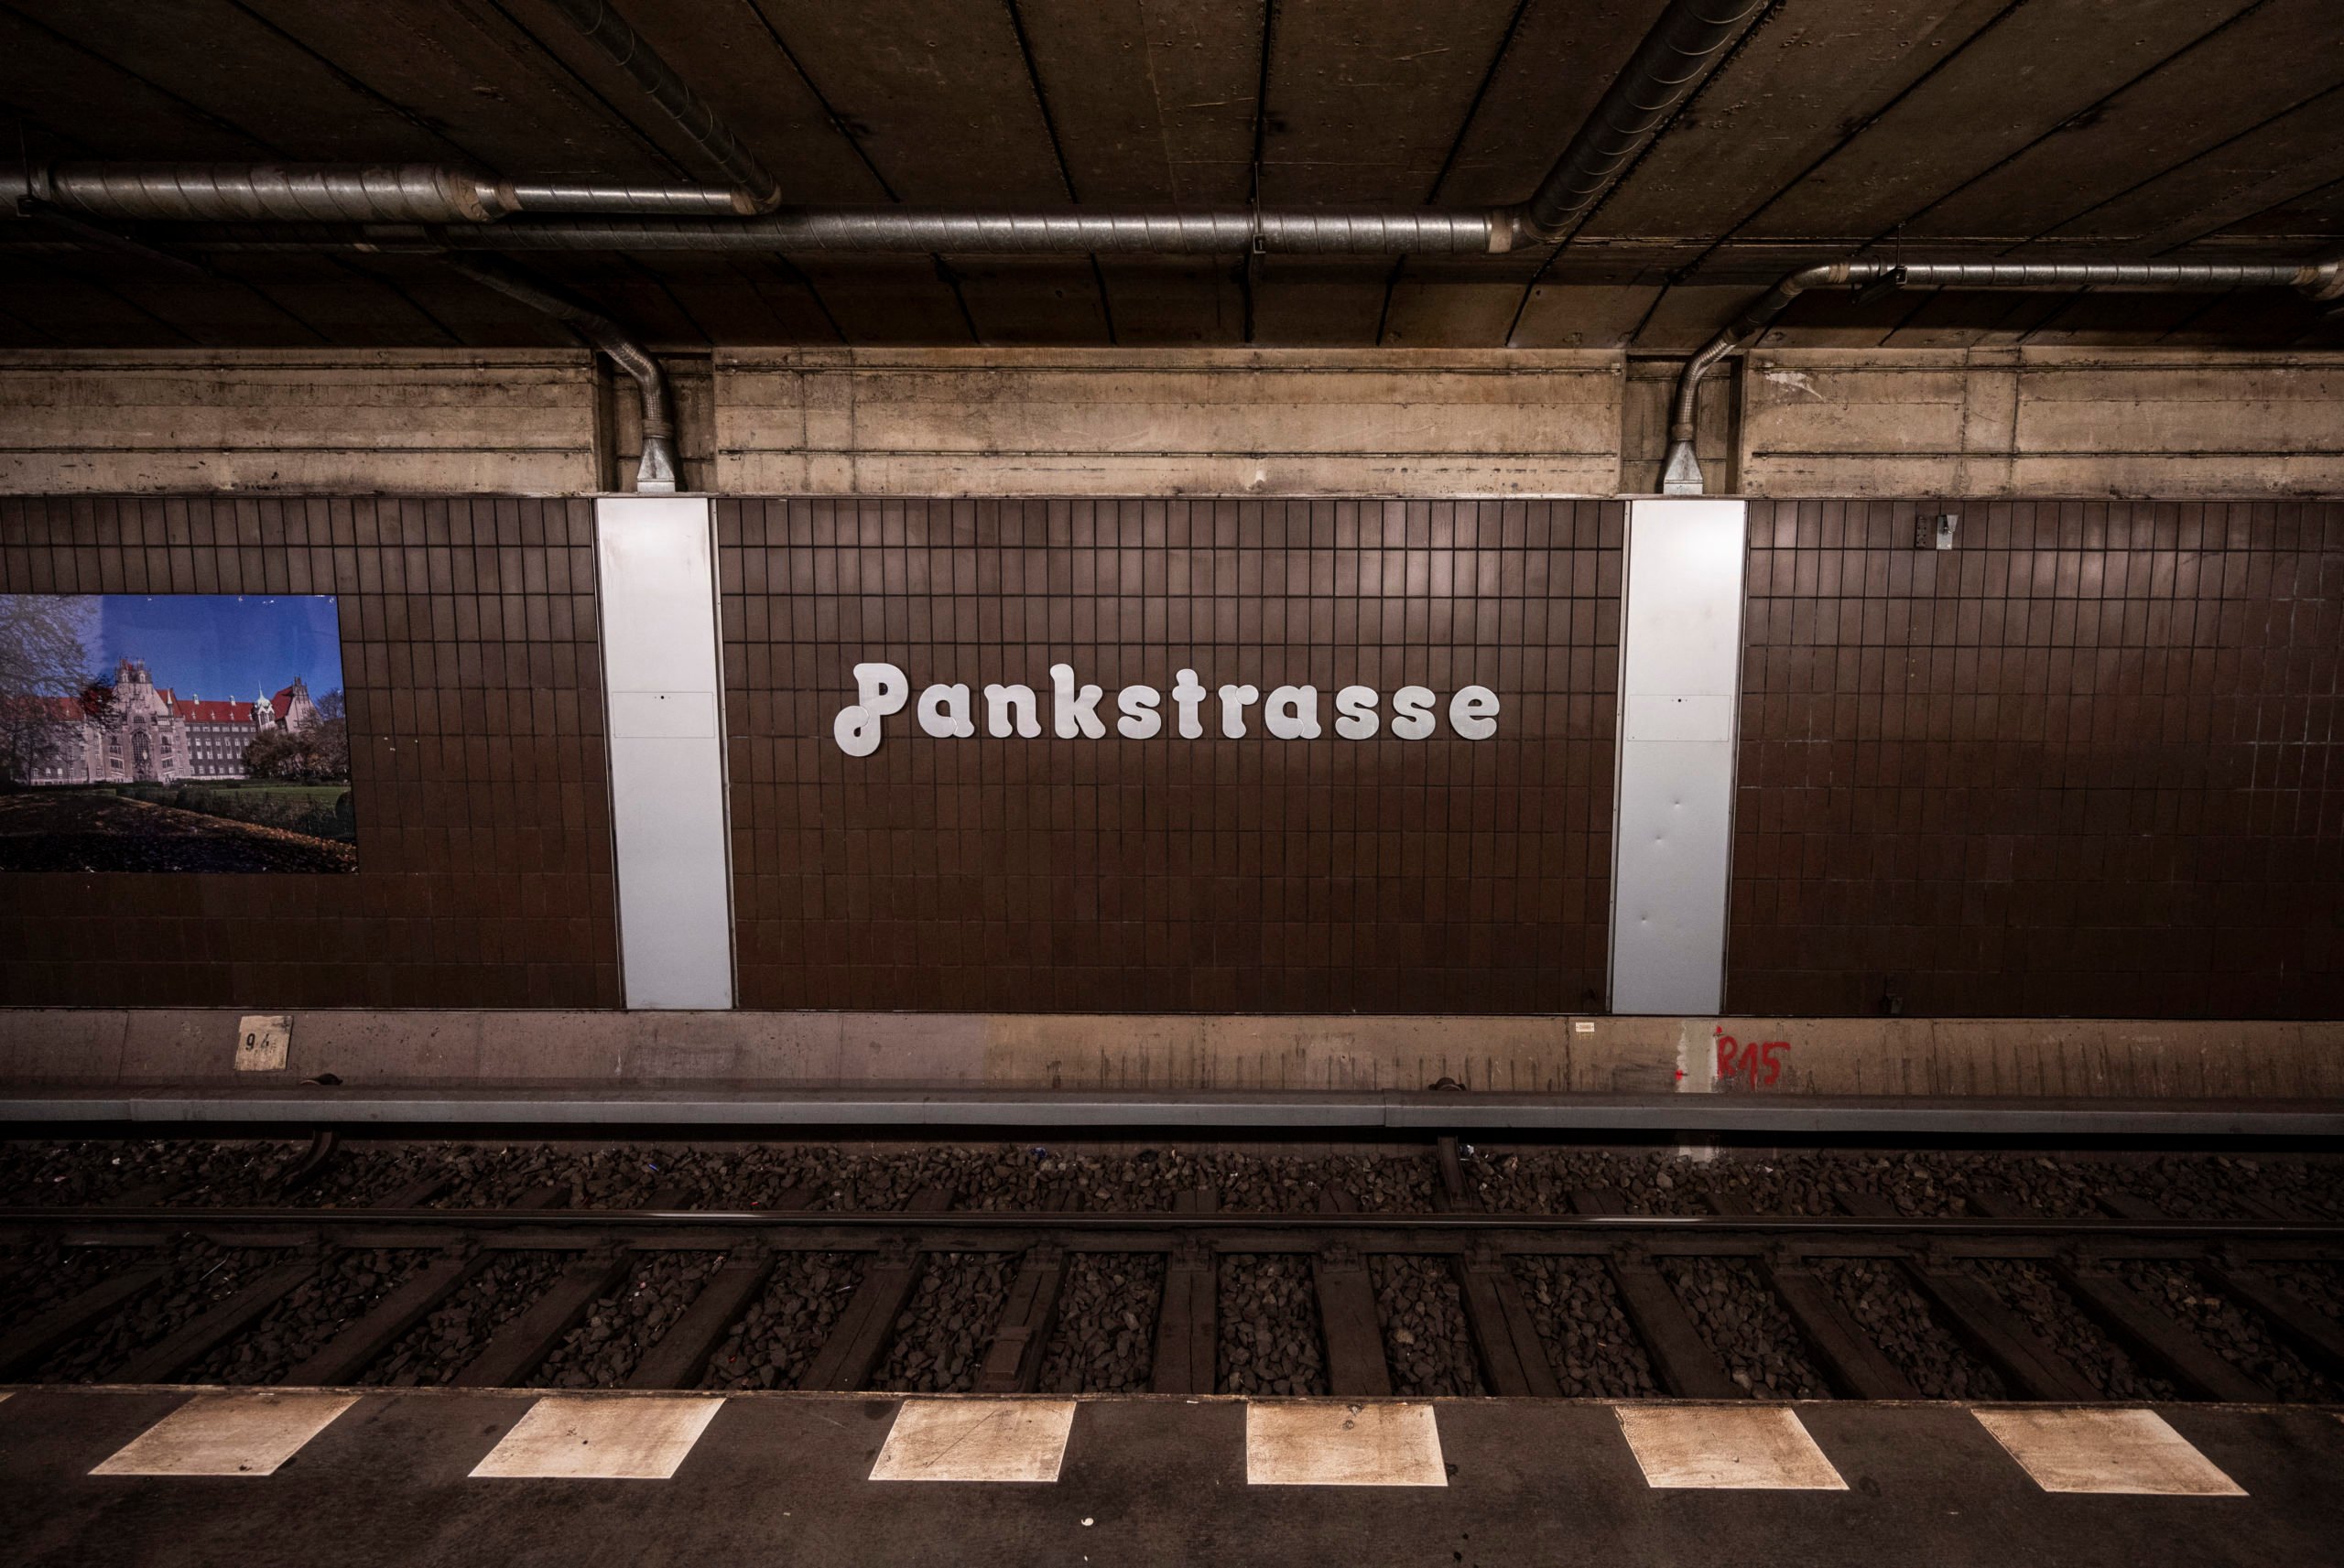 U-Bahn Pankstrasse